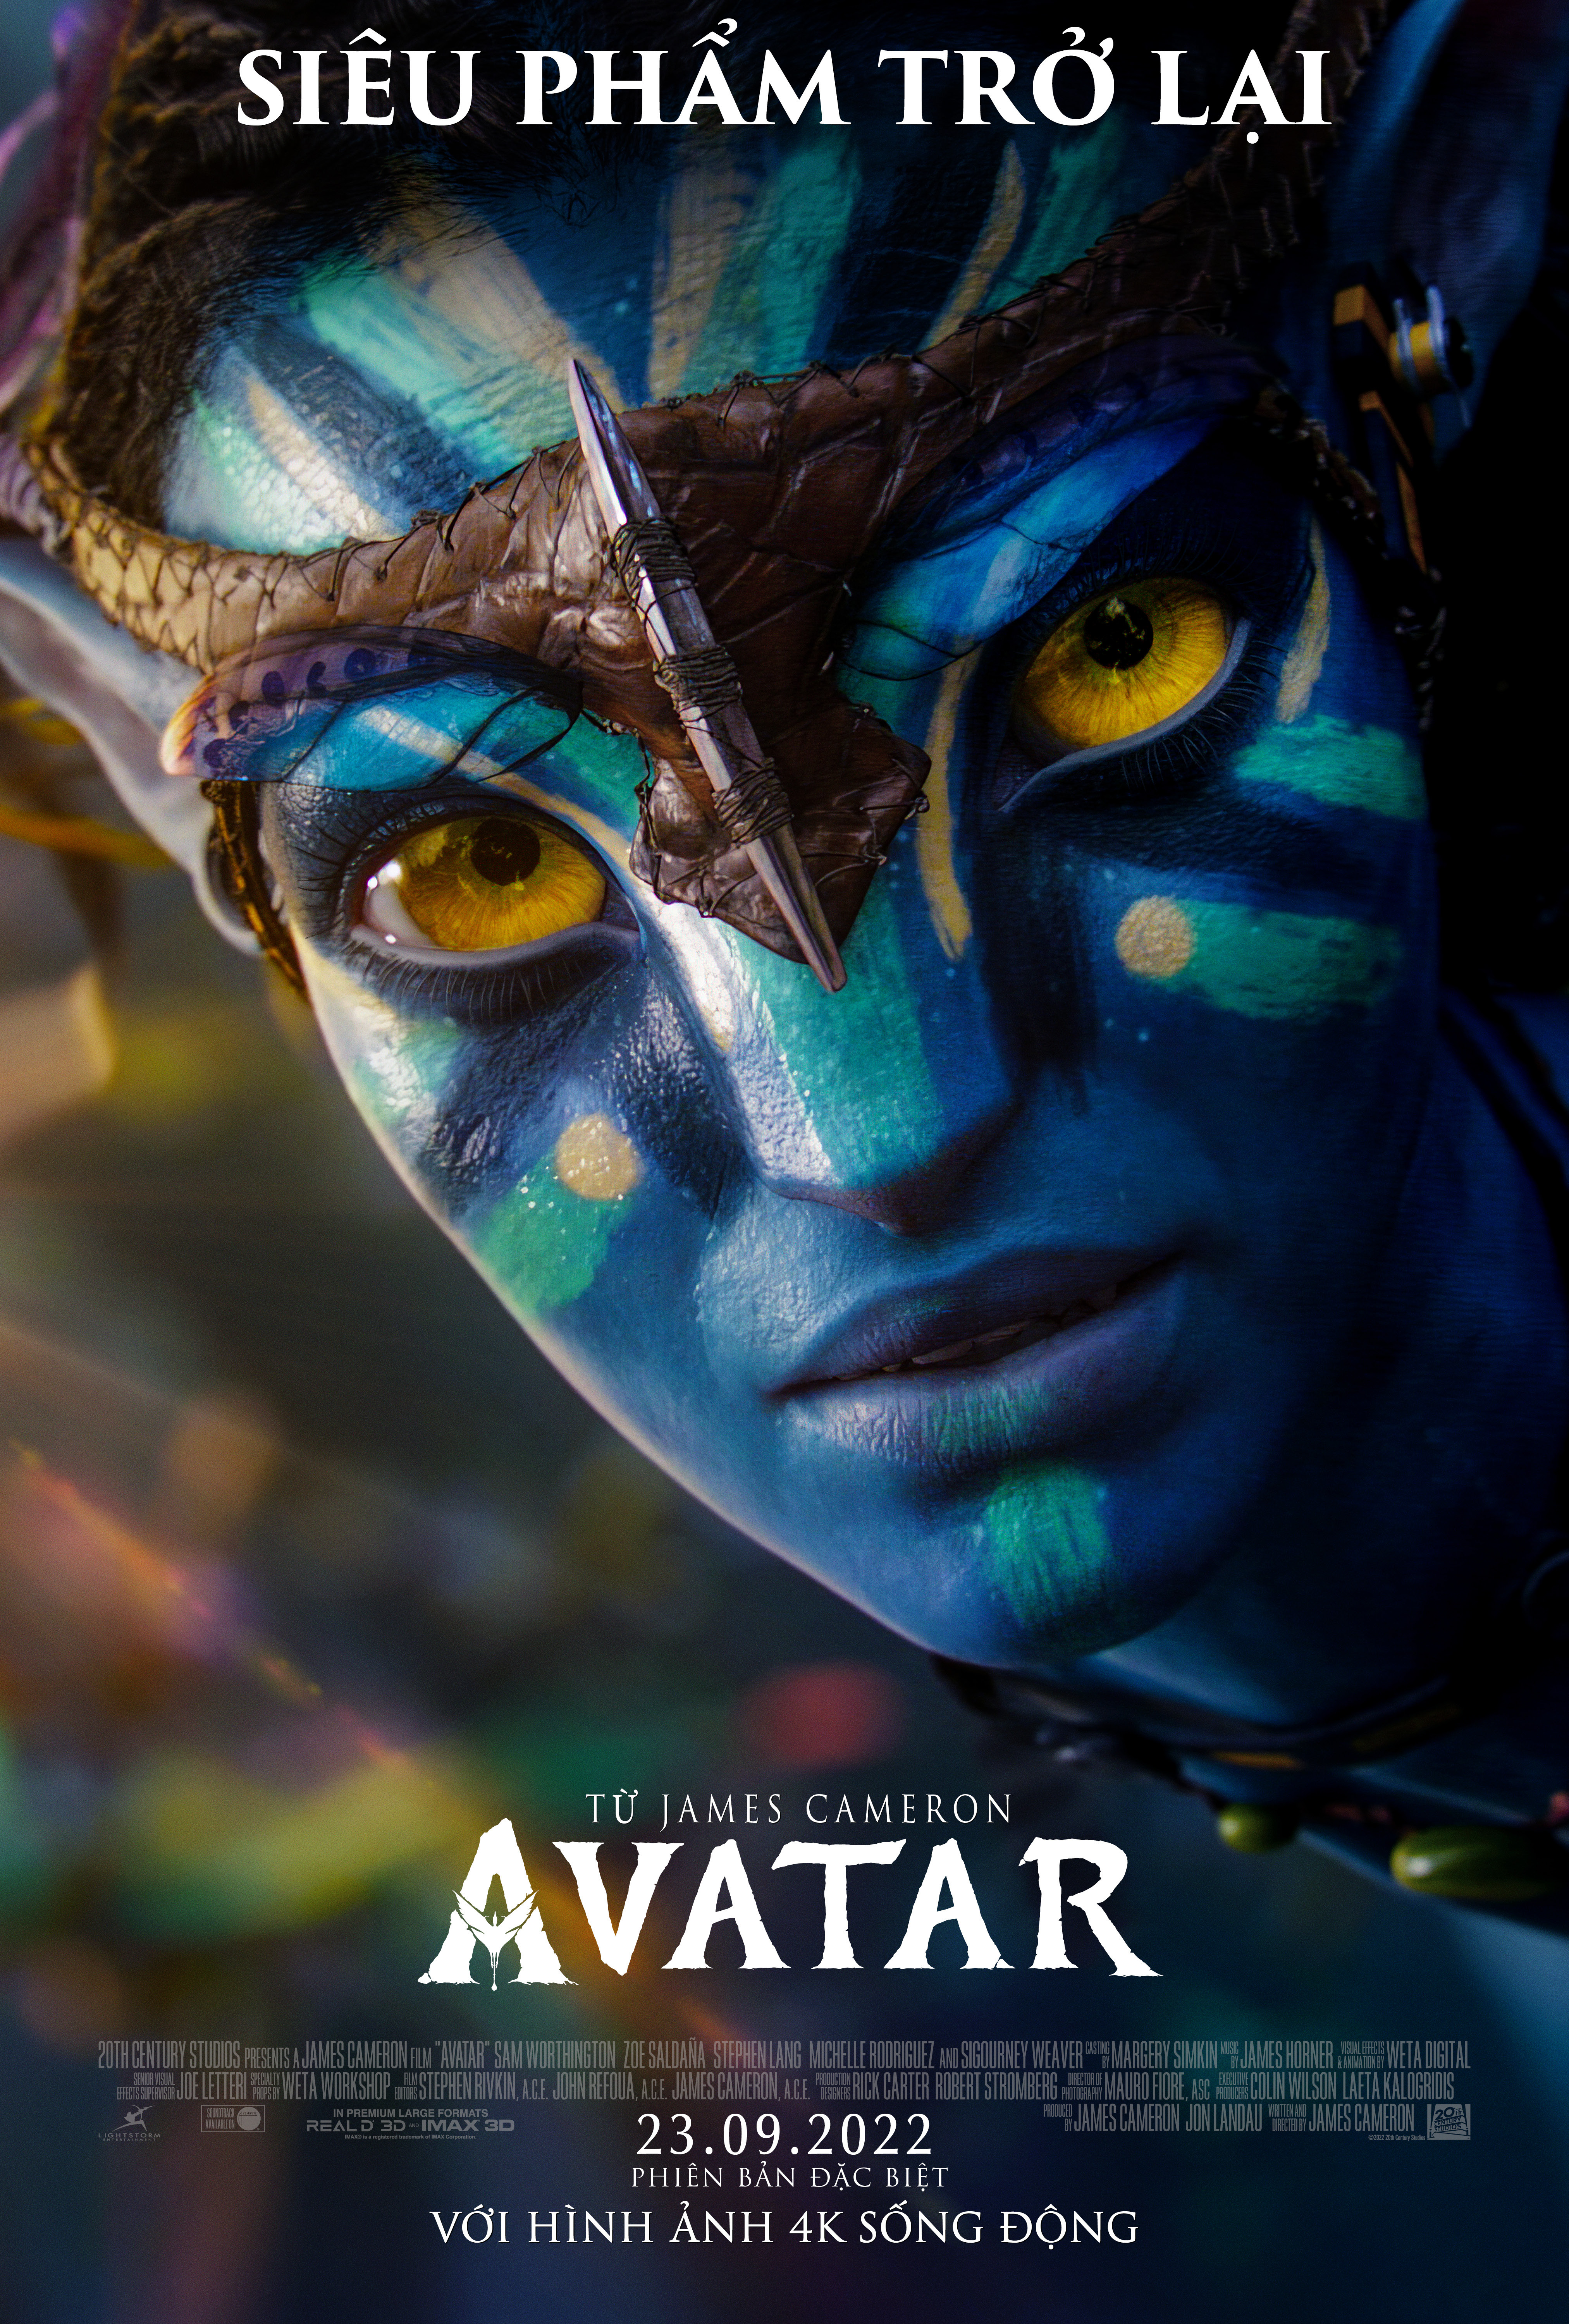 Cha đẻ Avatar James Cameron khẳng định phim 3D vẫn chưa chết